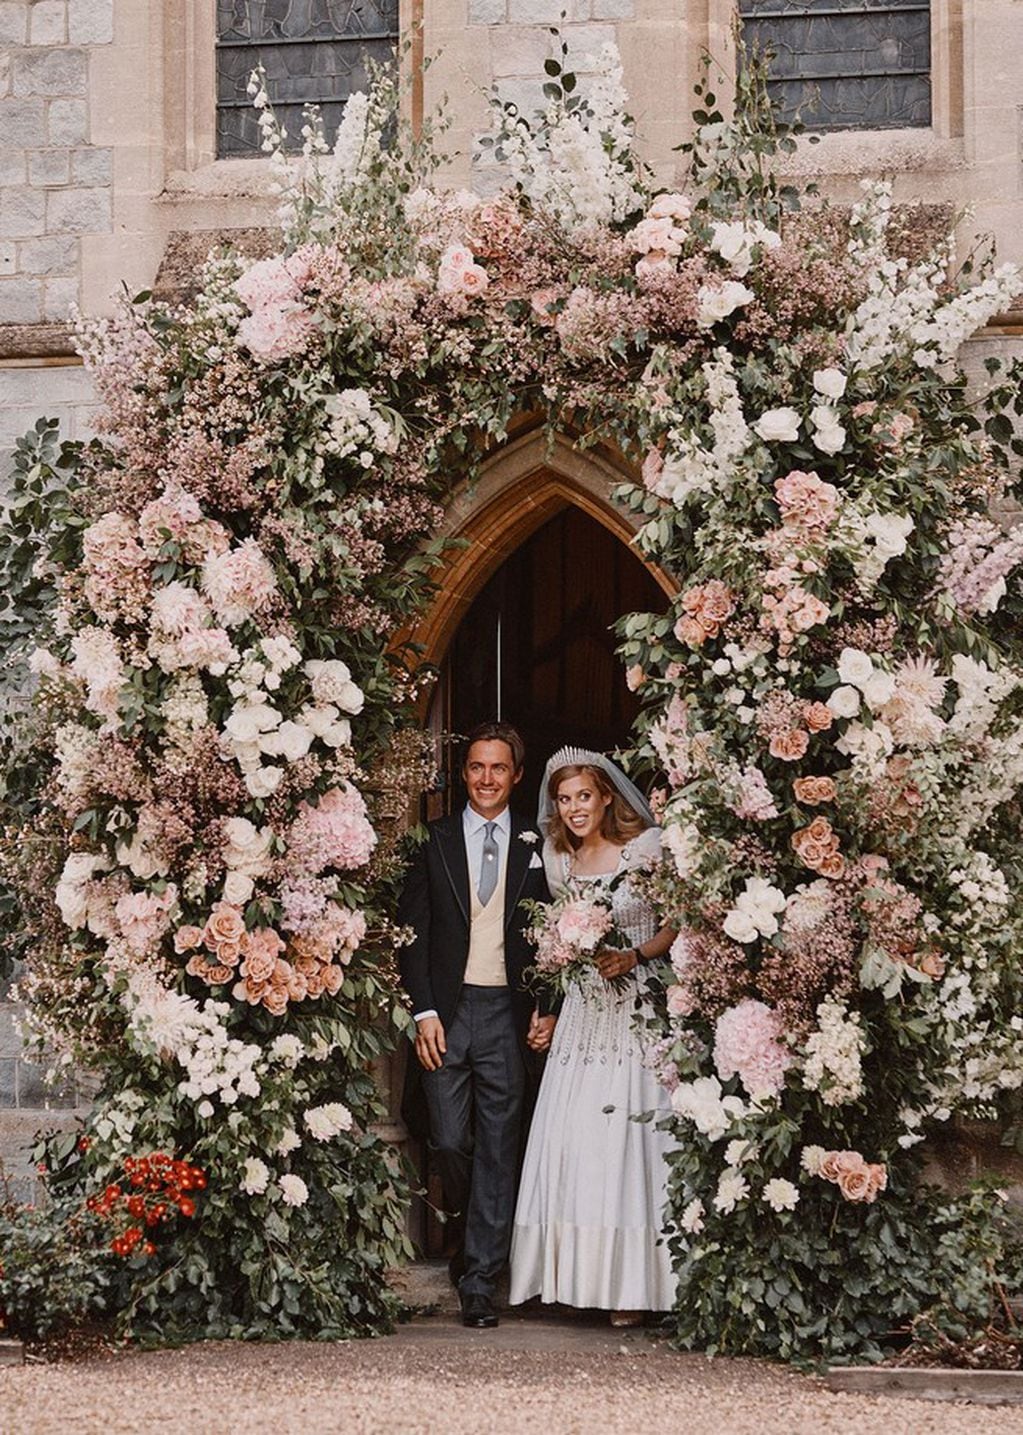 La boda de Beatriz de York fue pospuesta varias veces y tuvo que ser en secreto para que su padre pudiera asistir sin problemas. (Instagram/@theroyalfamily)